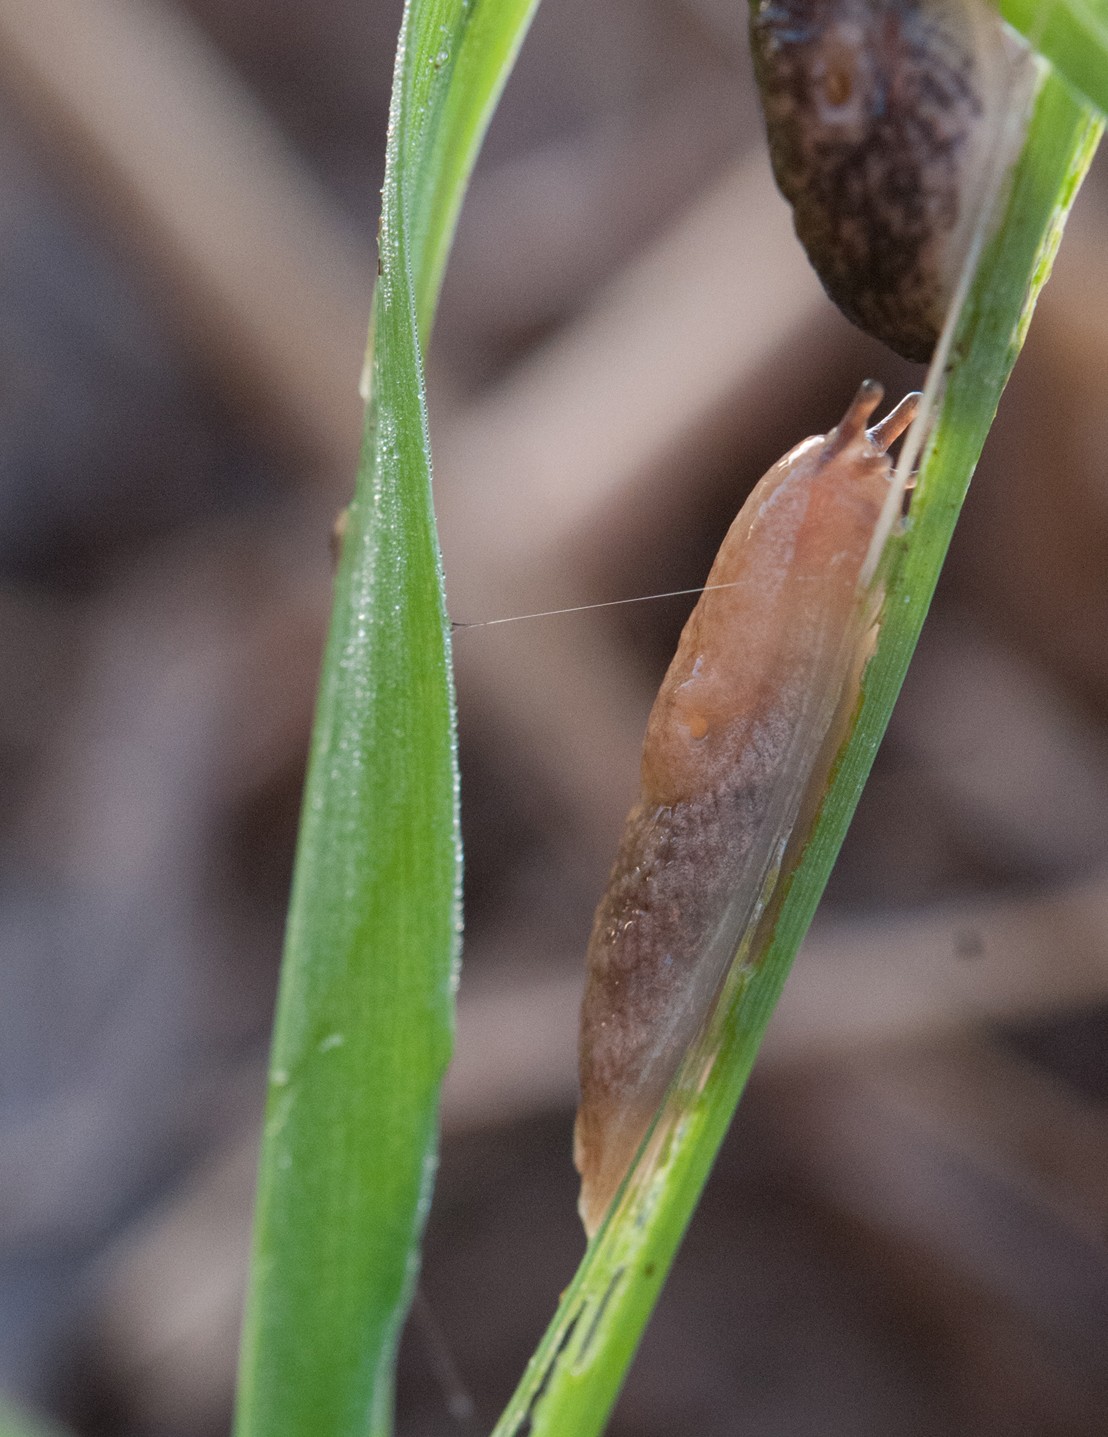 Deroceras reticulatum sur blé. Les cultures d'hiver (céréales d'hiver) semblent favoriser les populations de limaces davantage que les cultures de printemps. Photo : A. Chabert